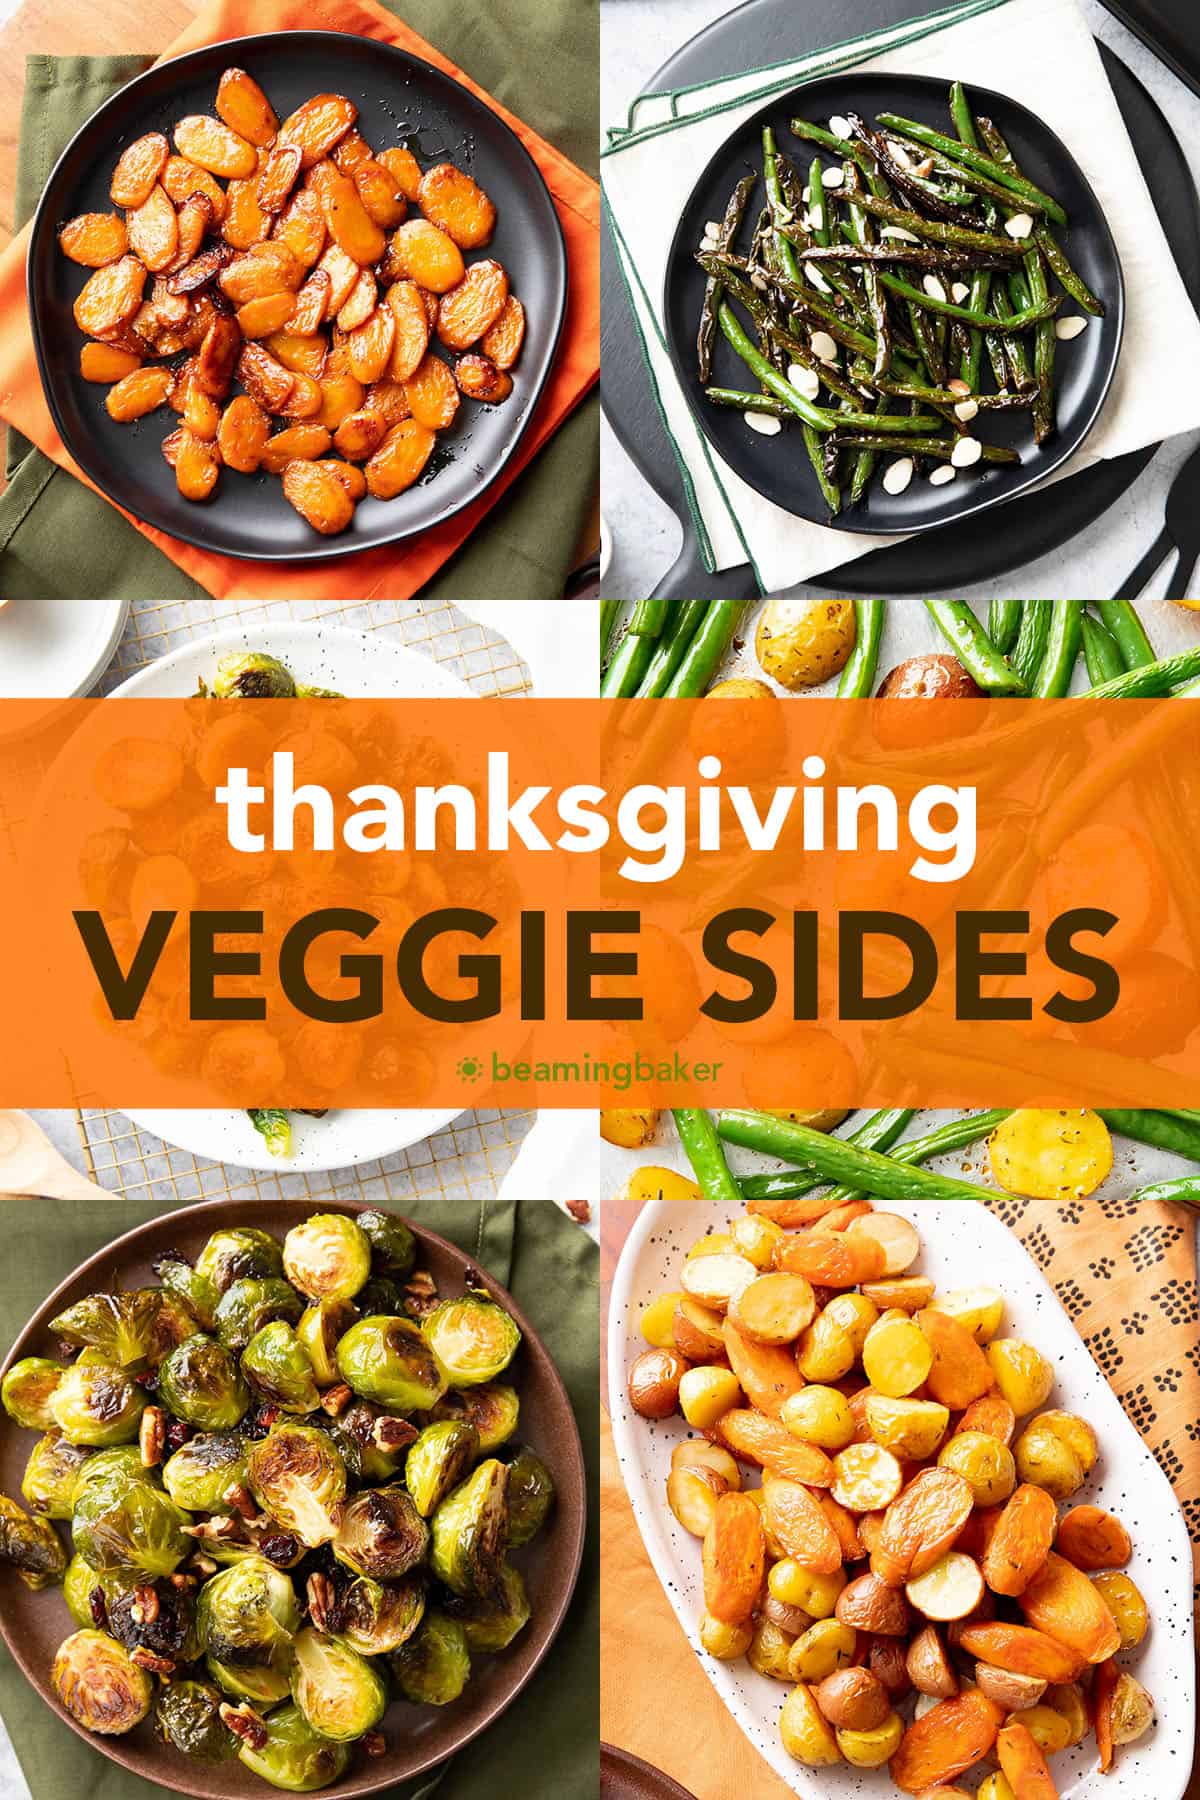 fotókollázs hálaadásnapi zöldségköret receptekkel